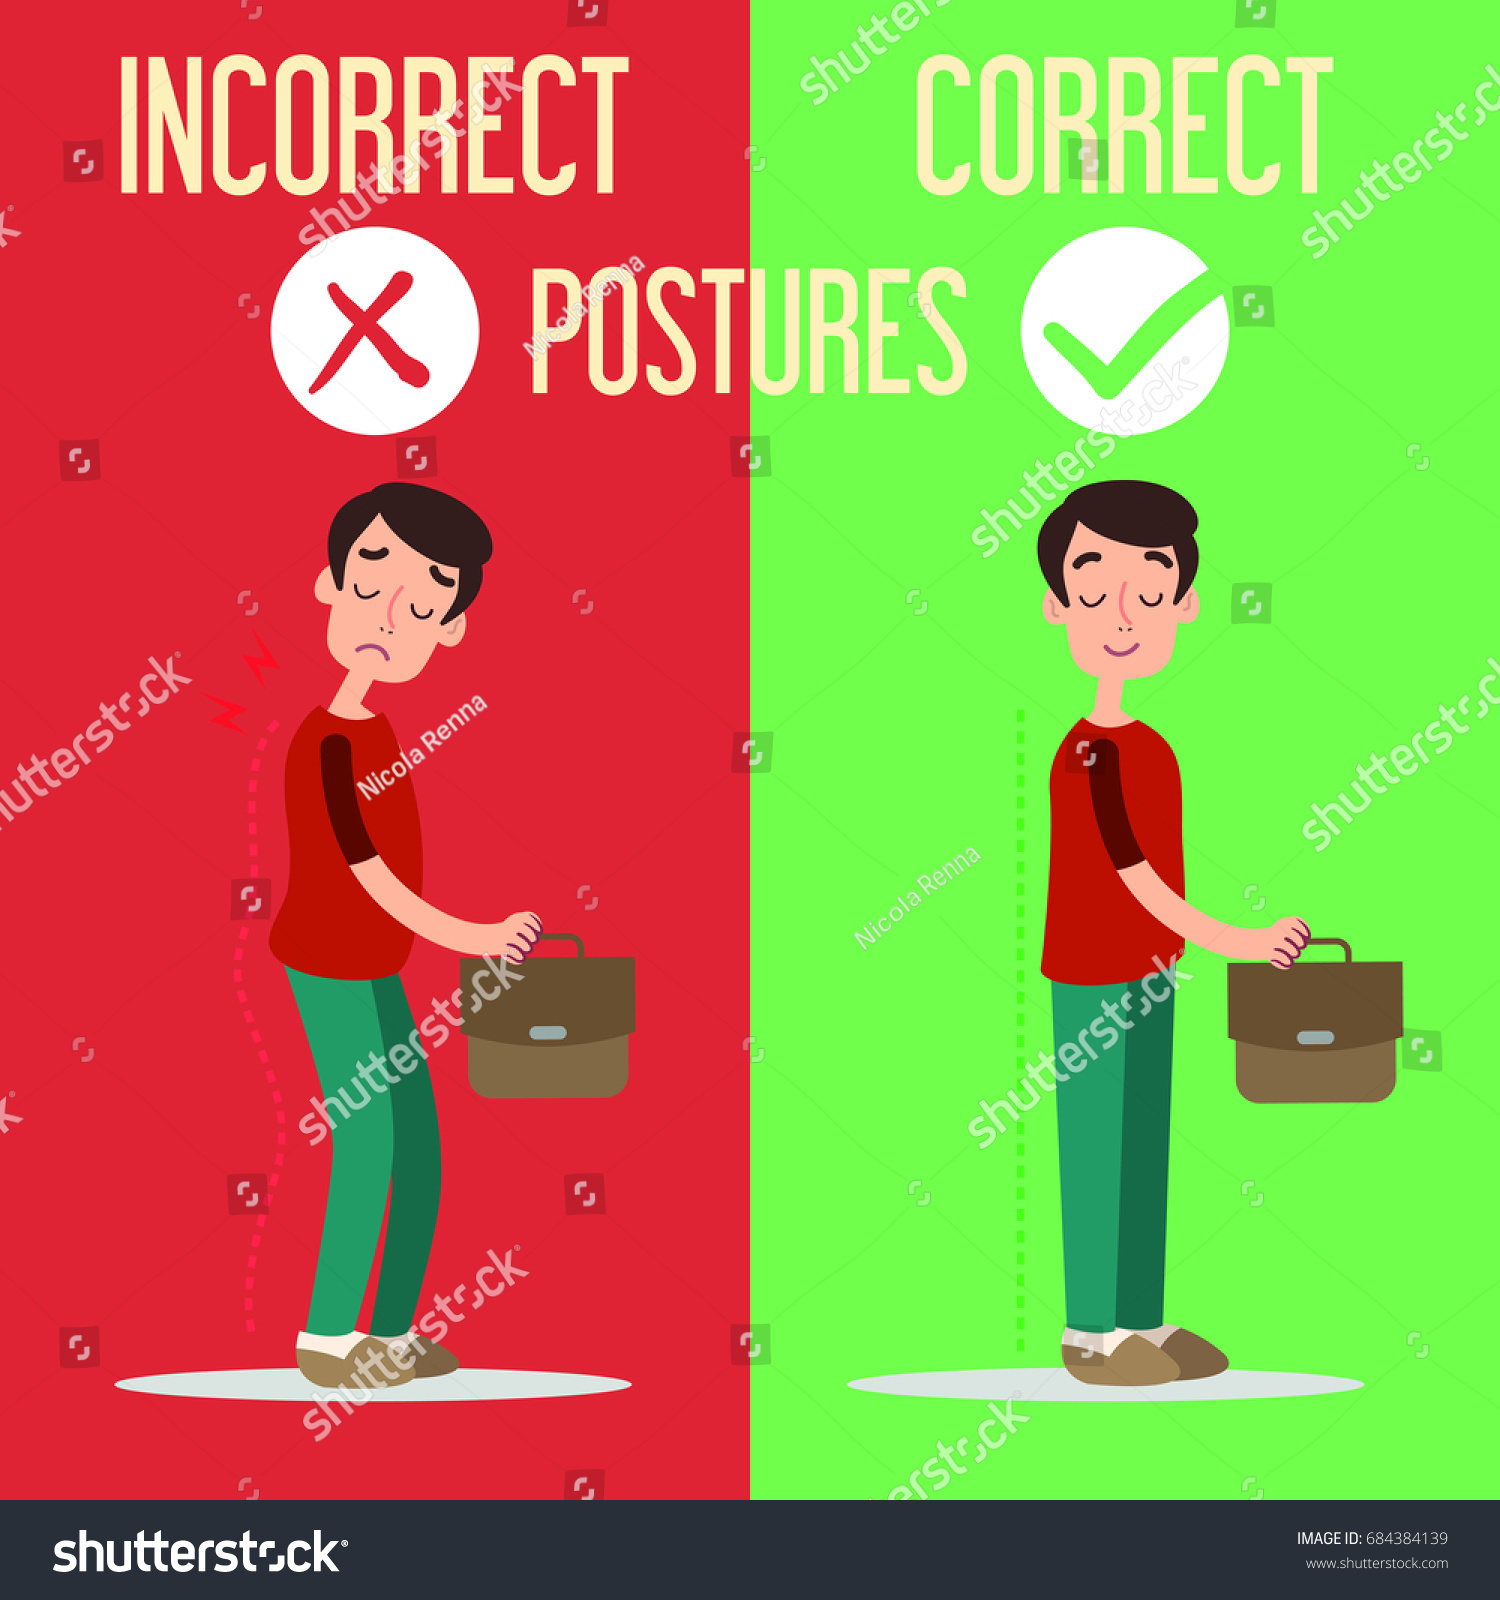 Correct Incorrect Postures Vector De Stock Libre De Regalías 684384139 Shutterstock